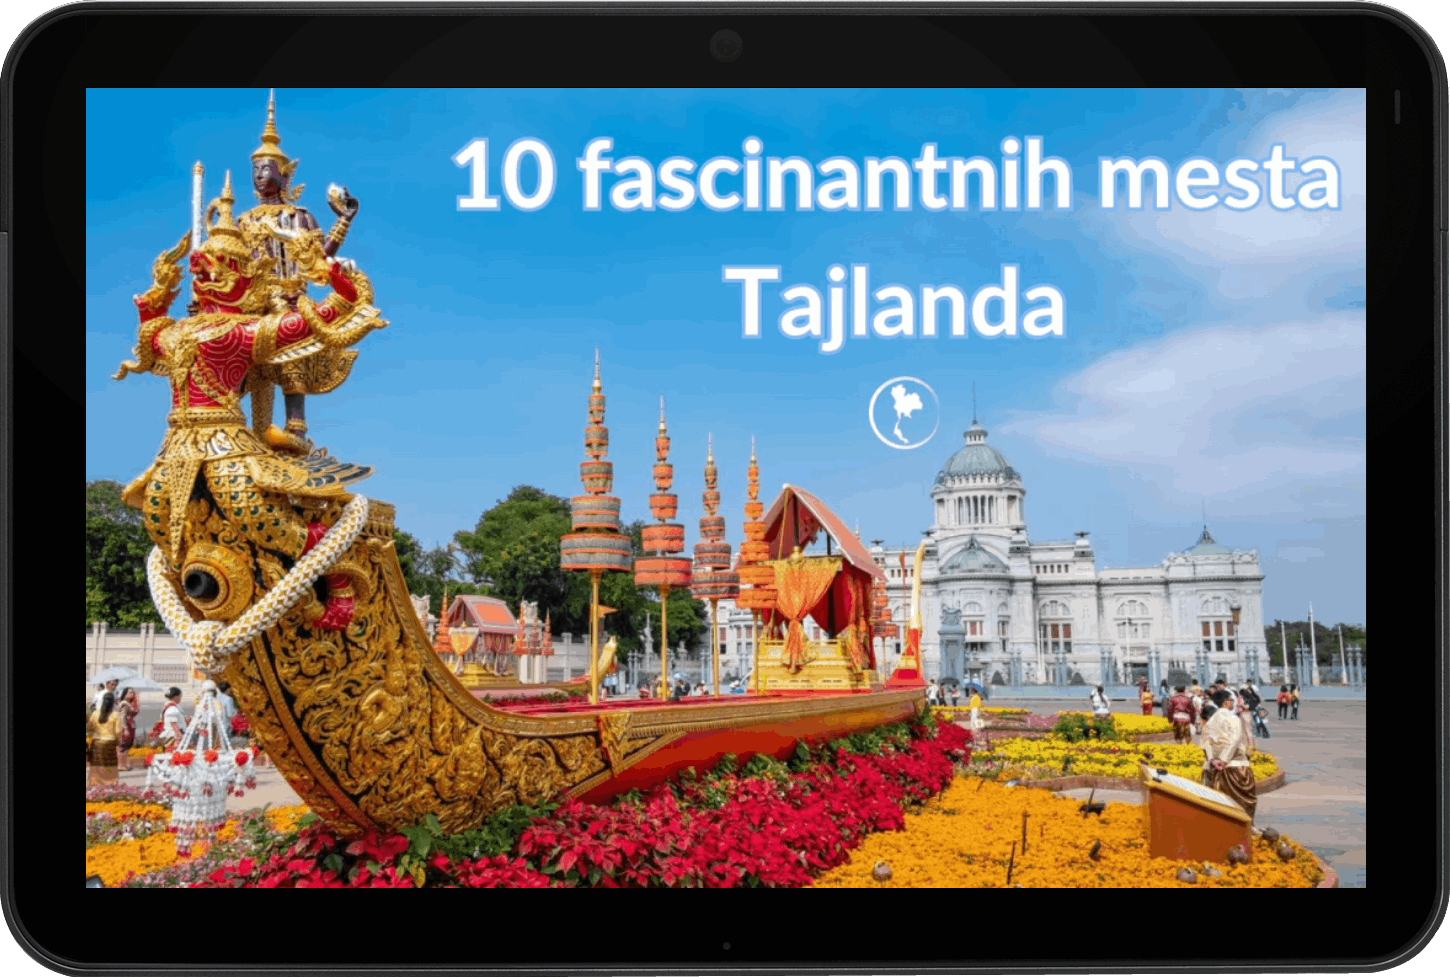 Privlačna naslovna slika za besplatnu e-knjigu '10 fascinantnih mesta Tajlanda' koja sadrži kolaž živopisnih i zadivljujućih prizora kultnih destinacija. Vizualni tizer nudi uvid u raznolike pejzaže, kulturne znamenitosti i uzbudljive atrakcije koje pokriva ova e-knjiga, mameći čitaoce da krenu na virtualno putovanje kroz fascinantna mesta Tajlanda.